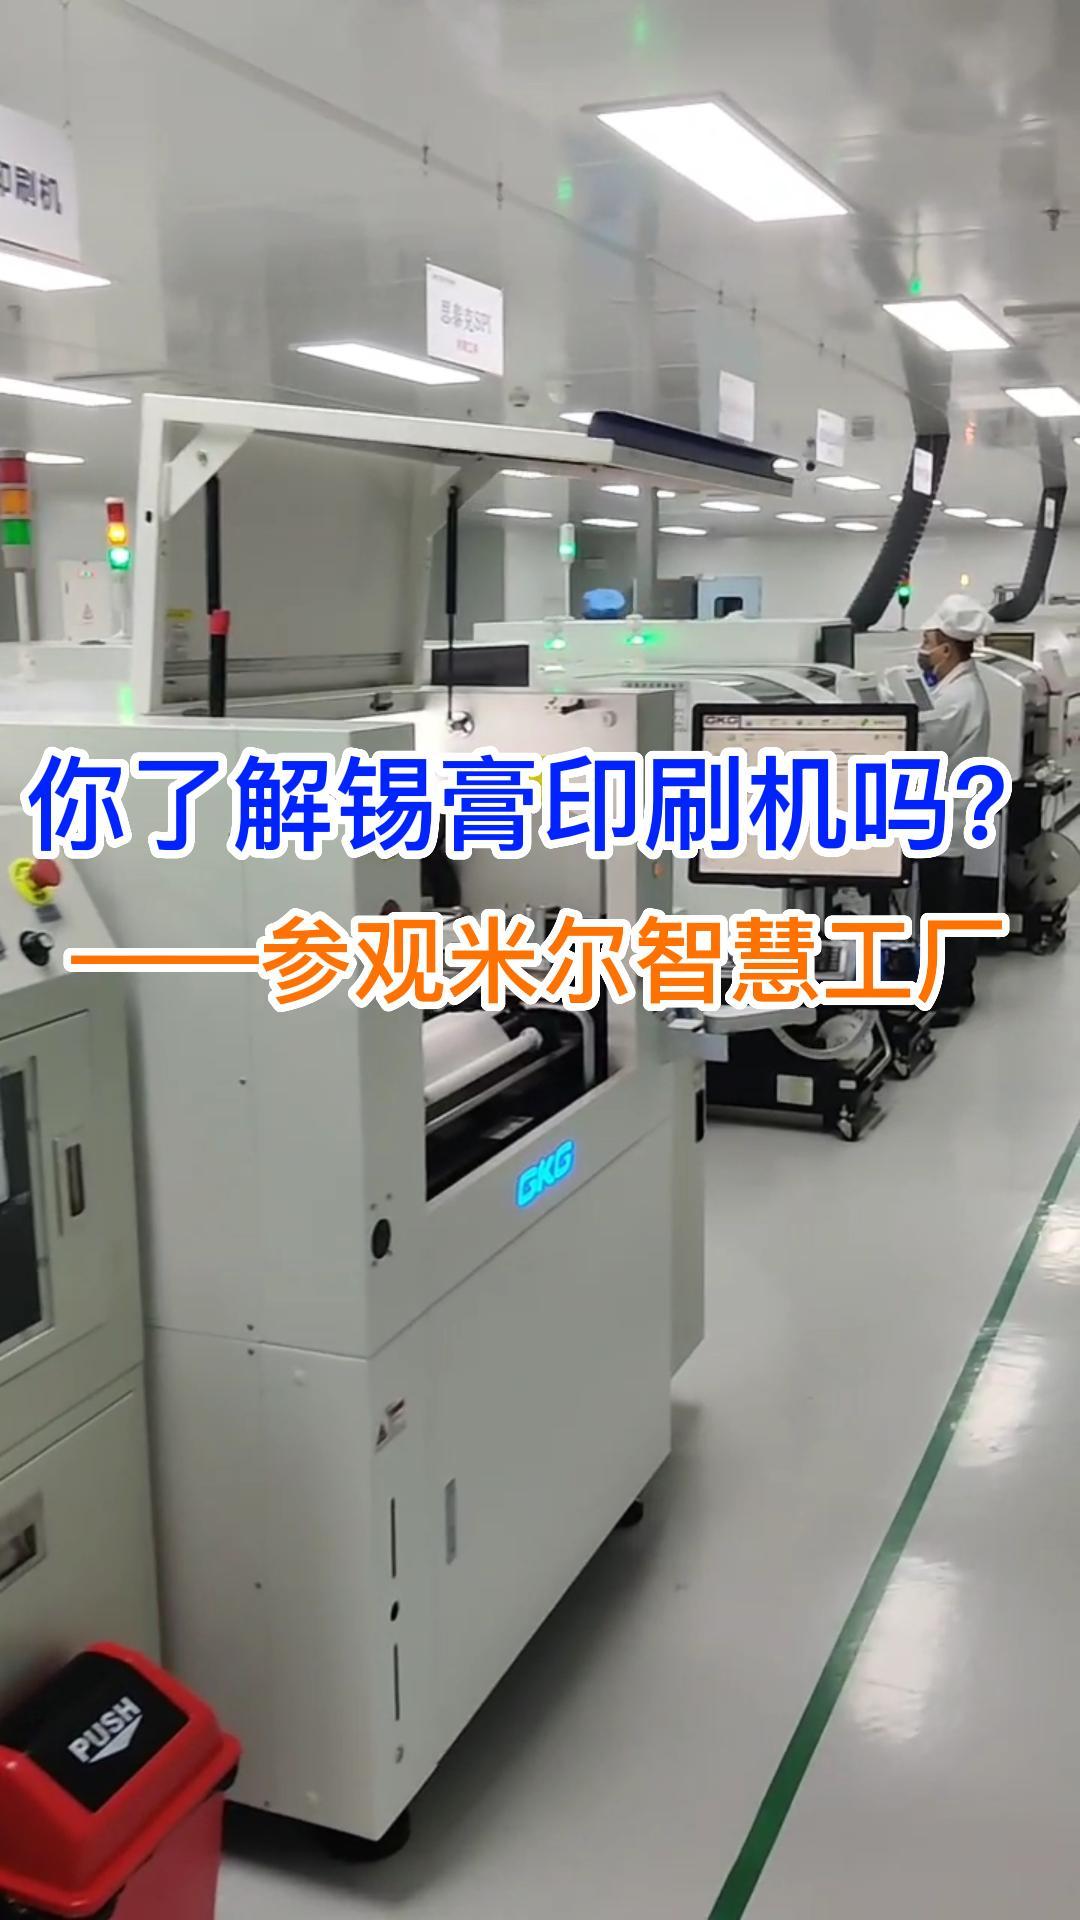 你知道锡膏印刷机的工作流程吗？米尔智慧工厂选用的这款是GKG G9+全自动锡膏印刷机# PCB
